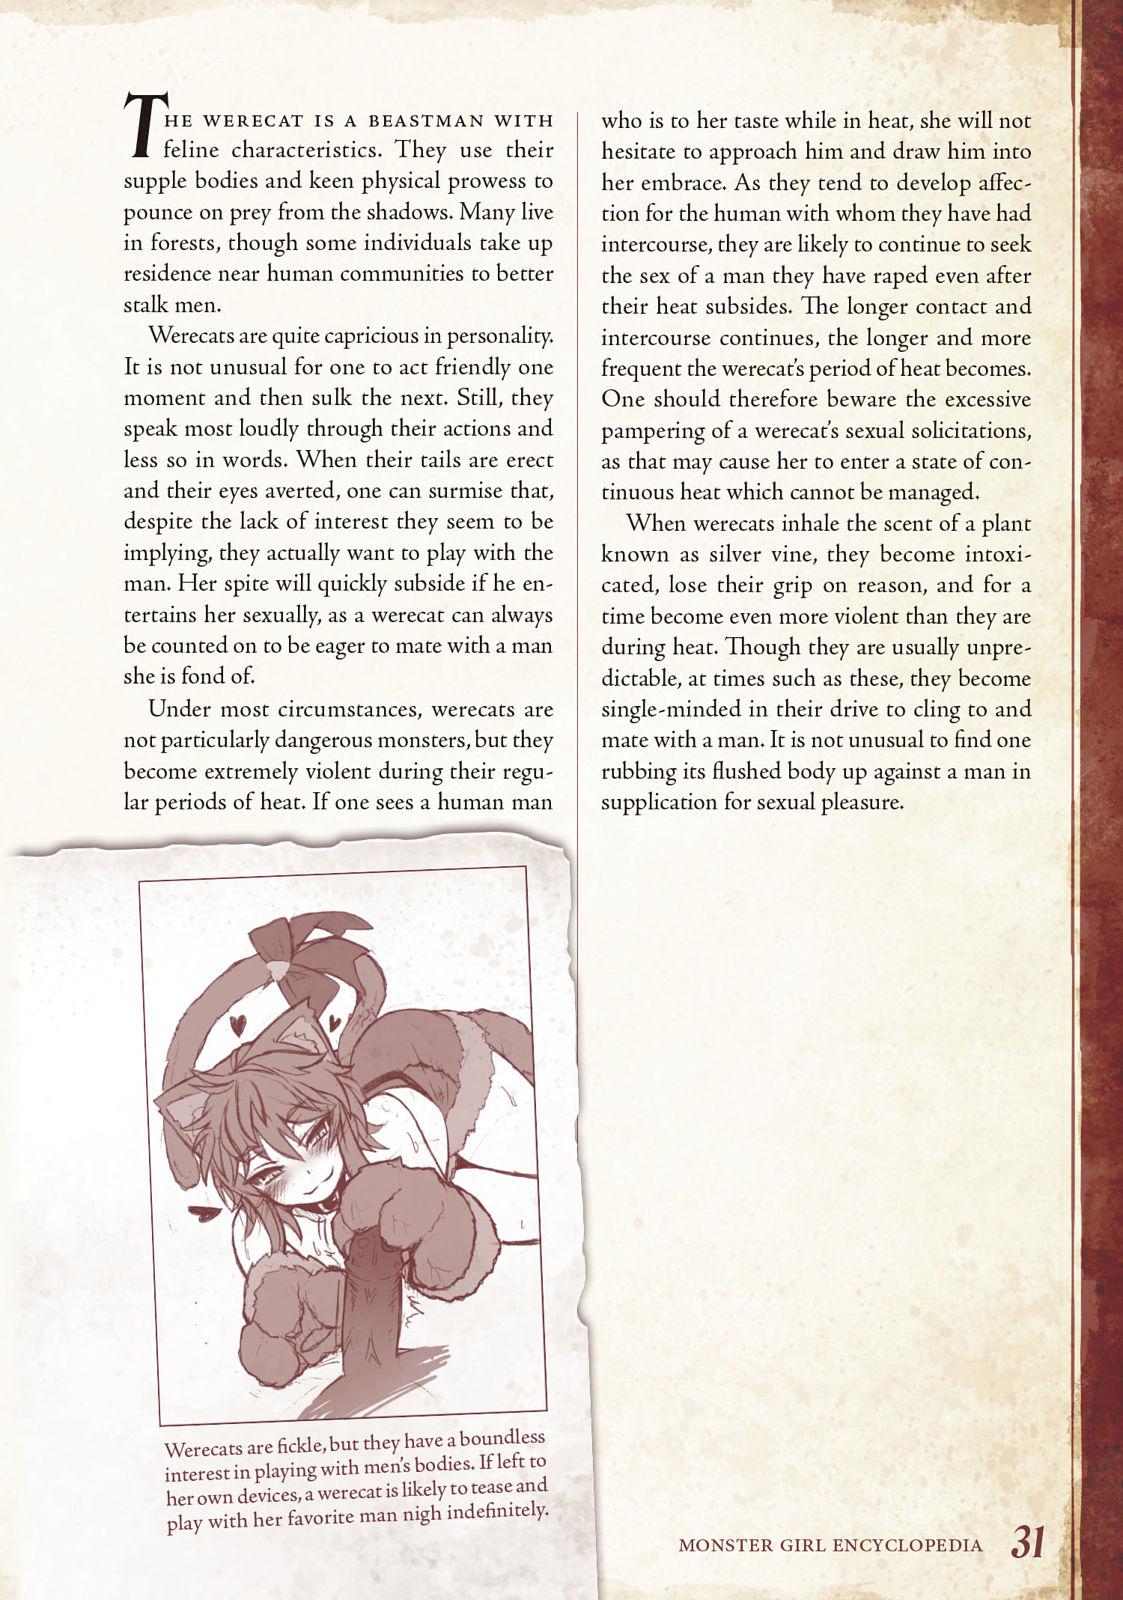 Monster Girl Encyclopedia Vol. 1 31